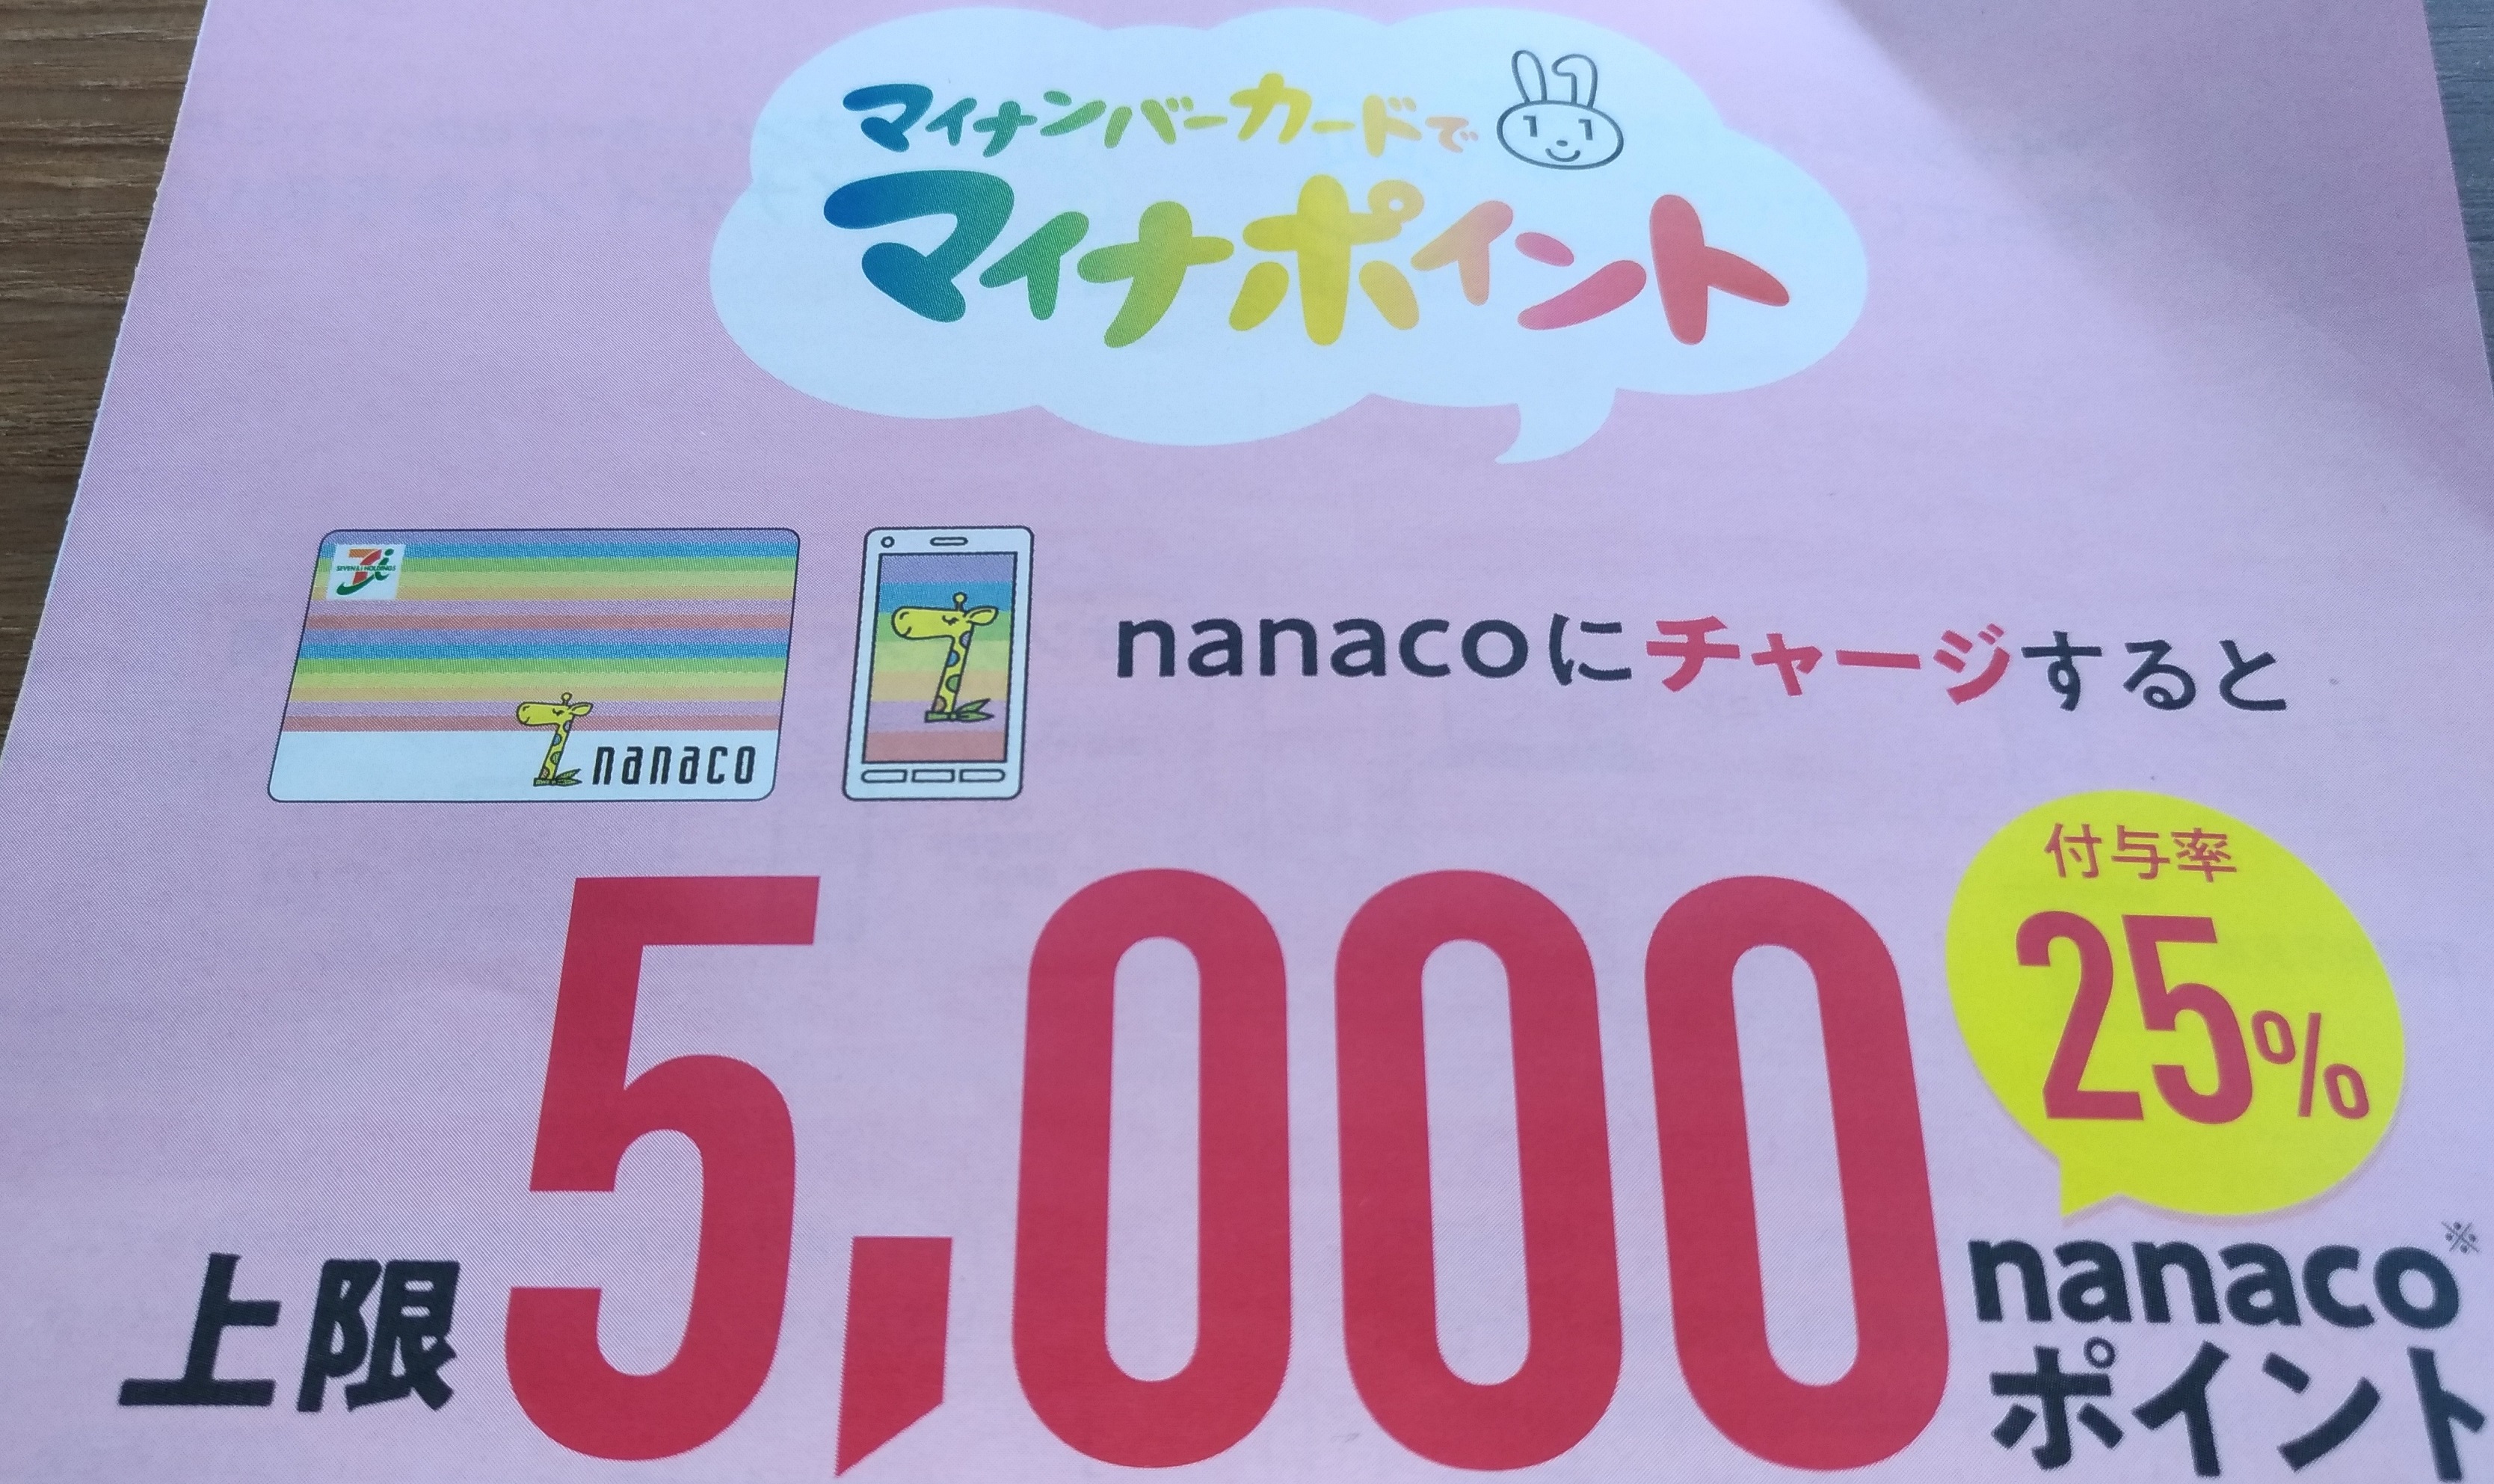 nanaco_my_numbers_1.jpg